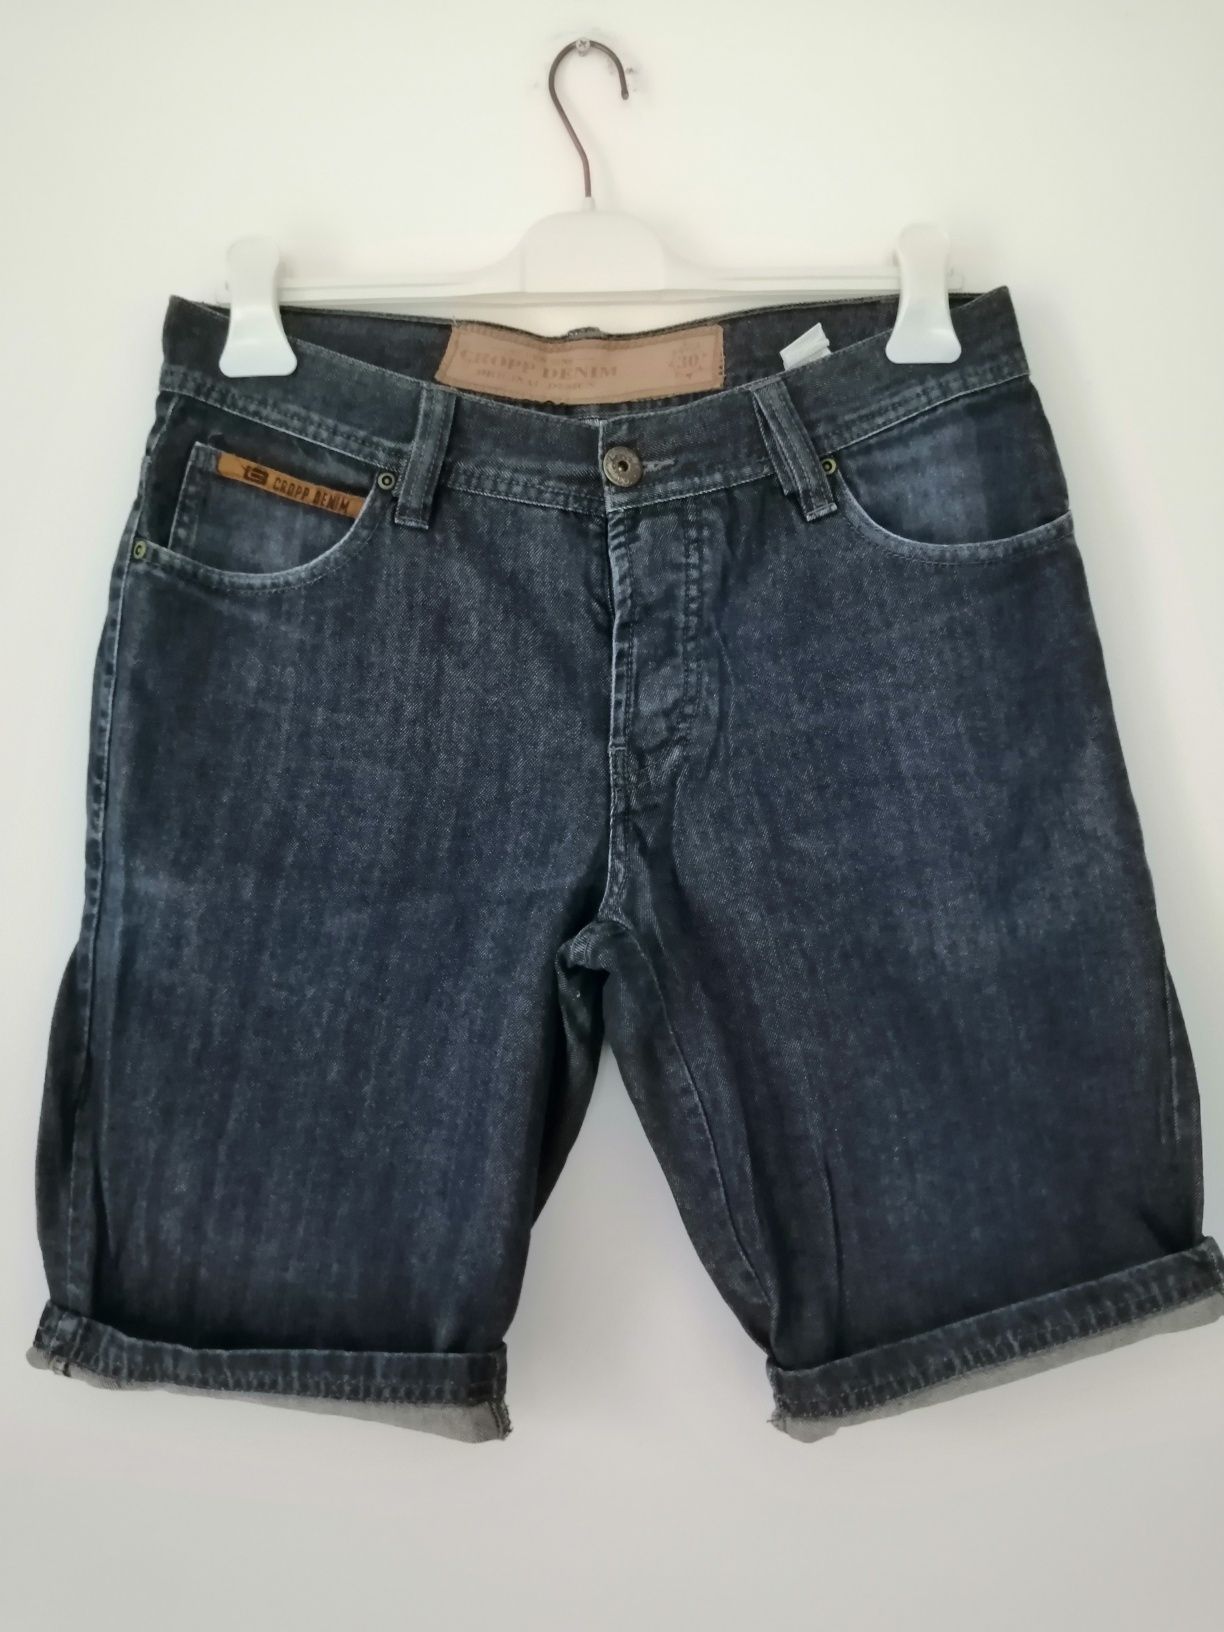 Granatowe męskie jeansowe spodenki do kolan bawełna Cropp, rozmiar 30